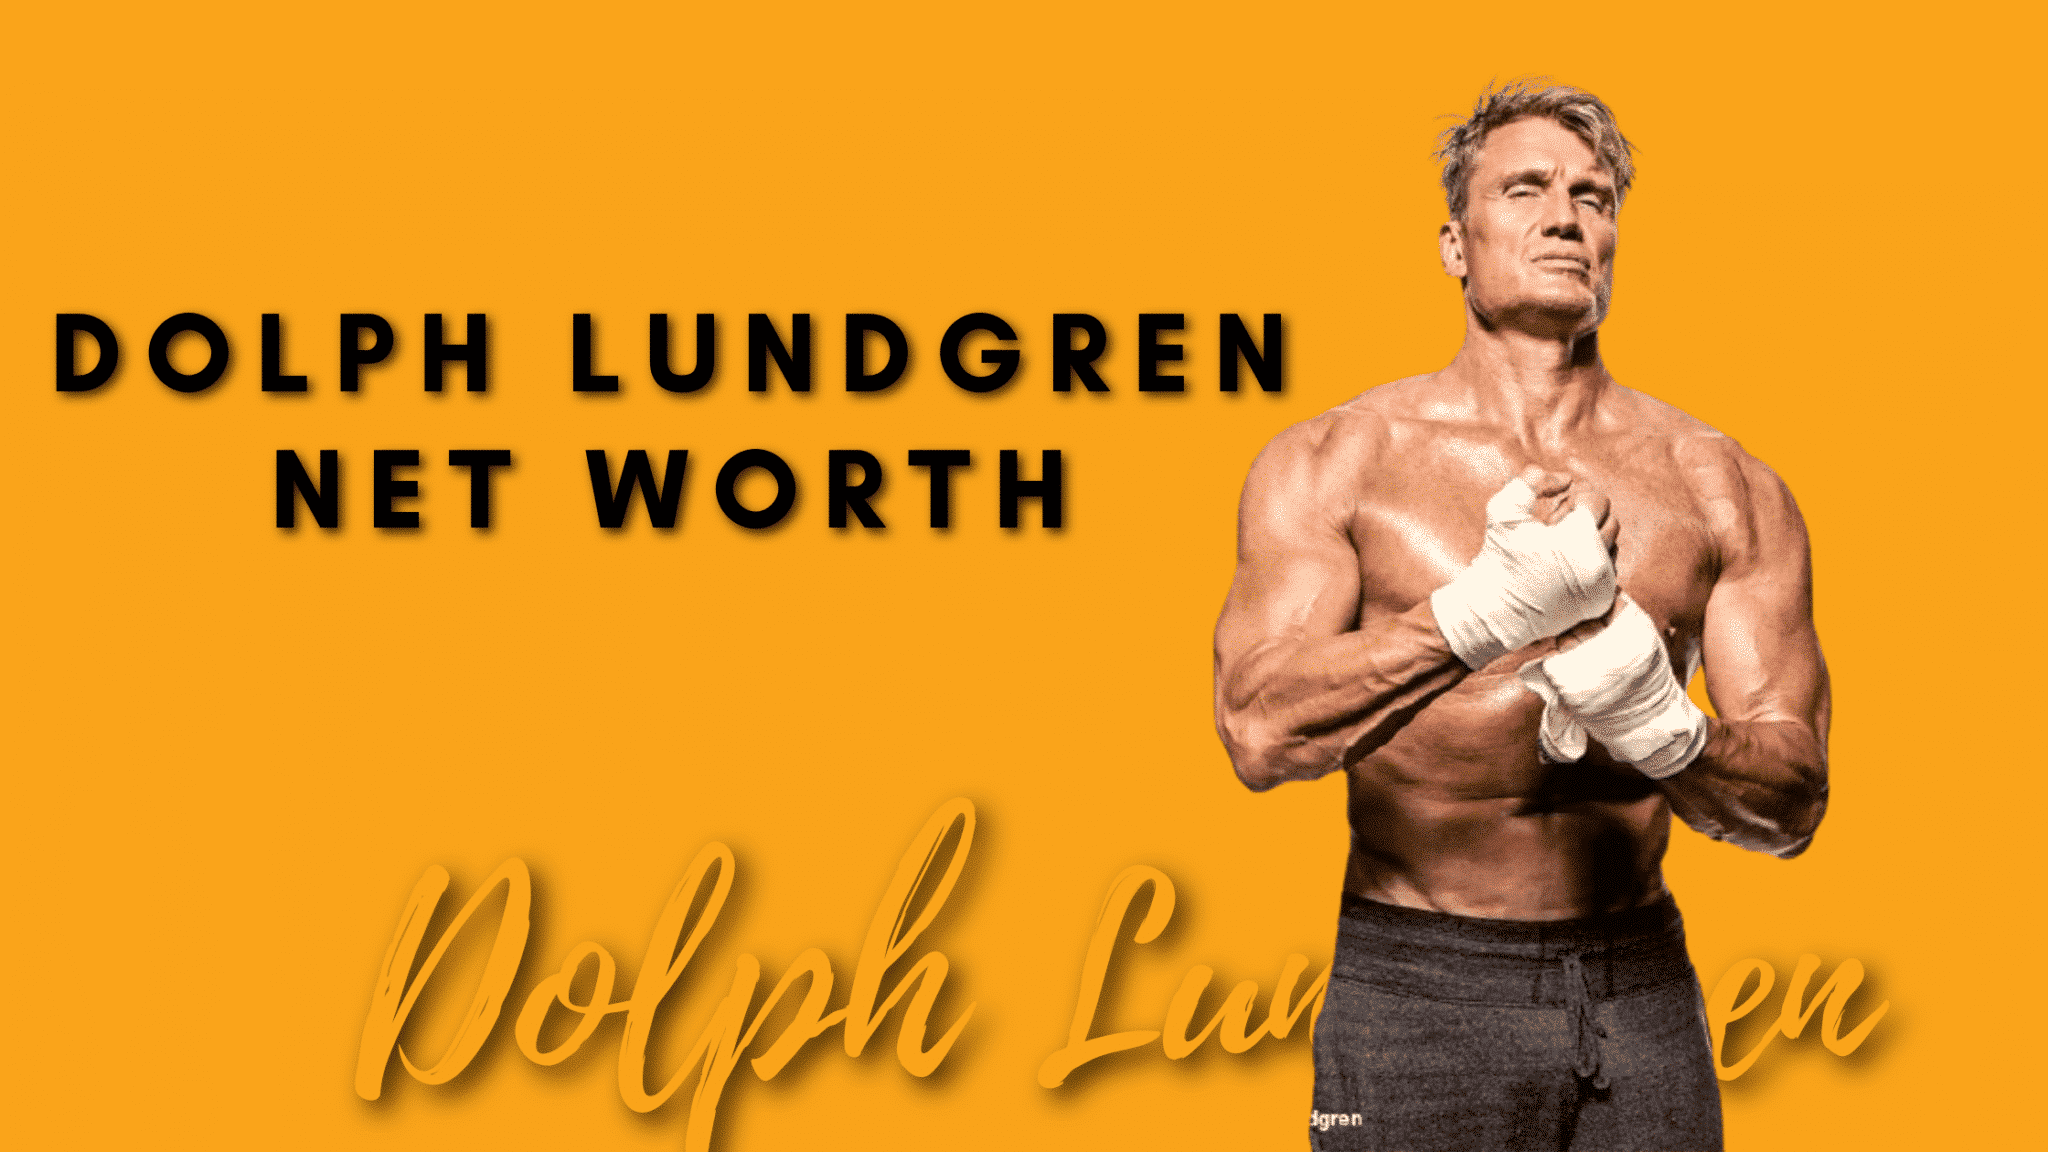 Dolph Lundgren Net worth